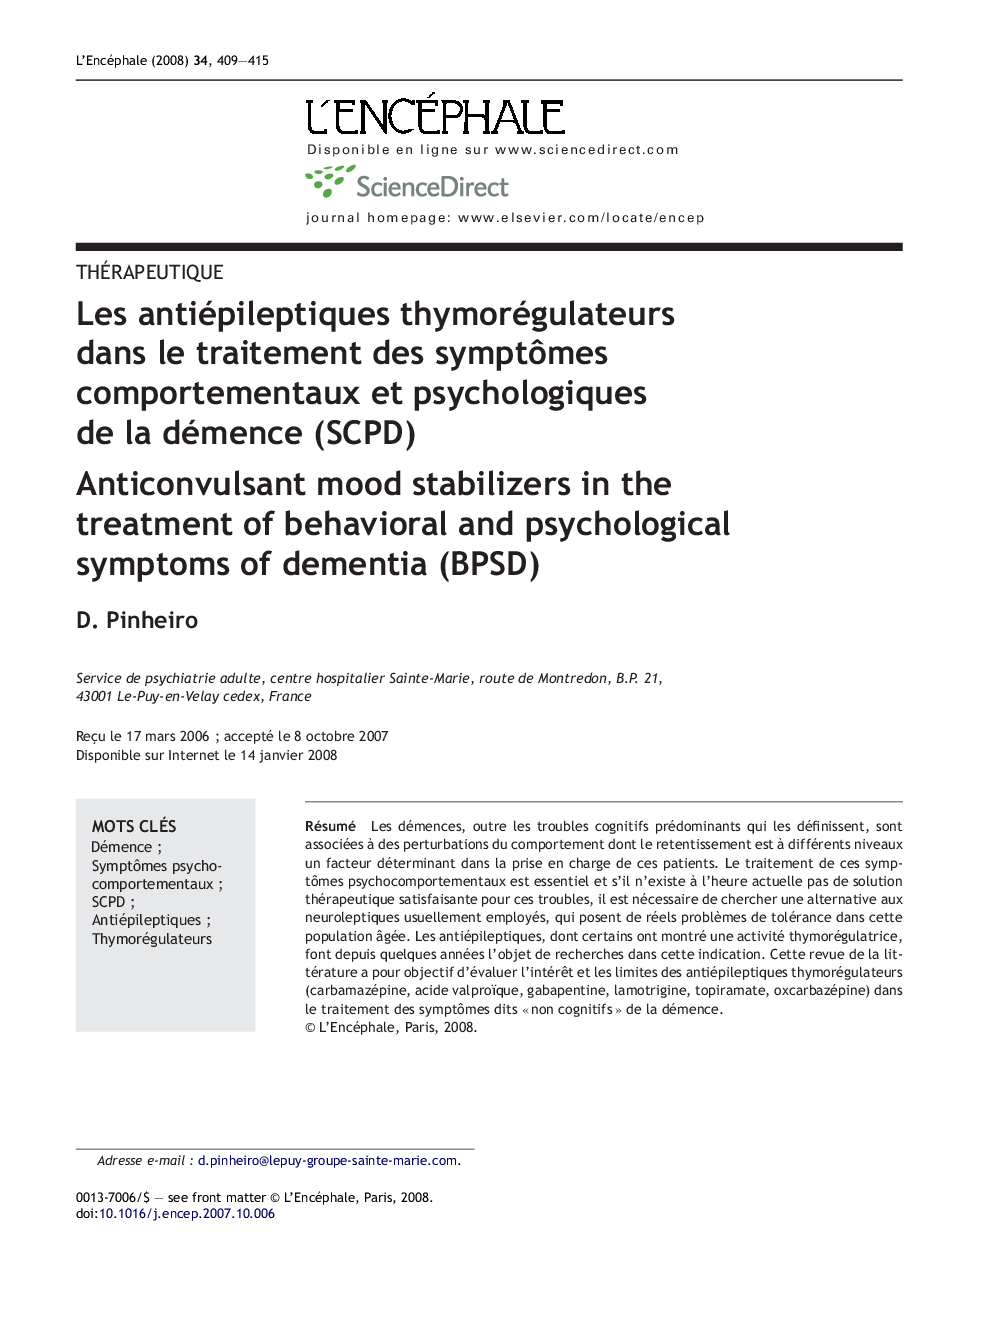 Les antiépileptiques thymorégulateurs dans le traitement des symptÃ´mes comportementaux et psychologiques de la démence (SCPD)